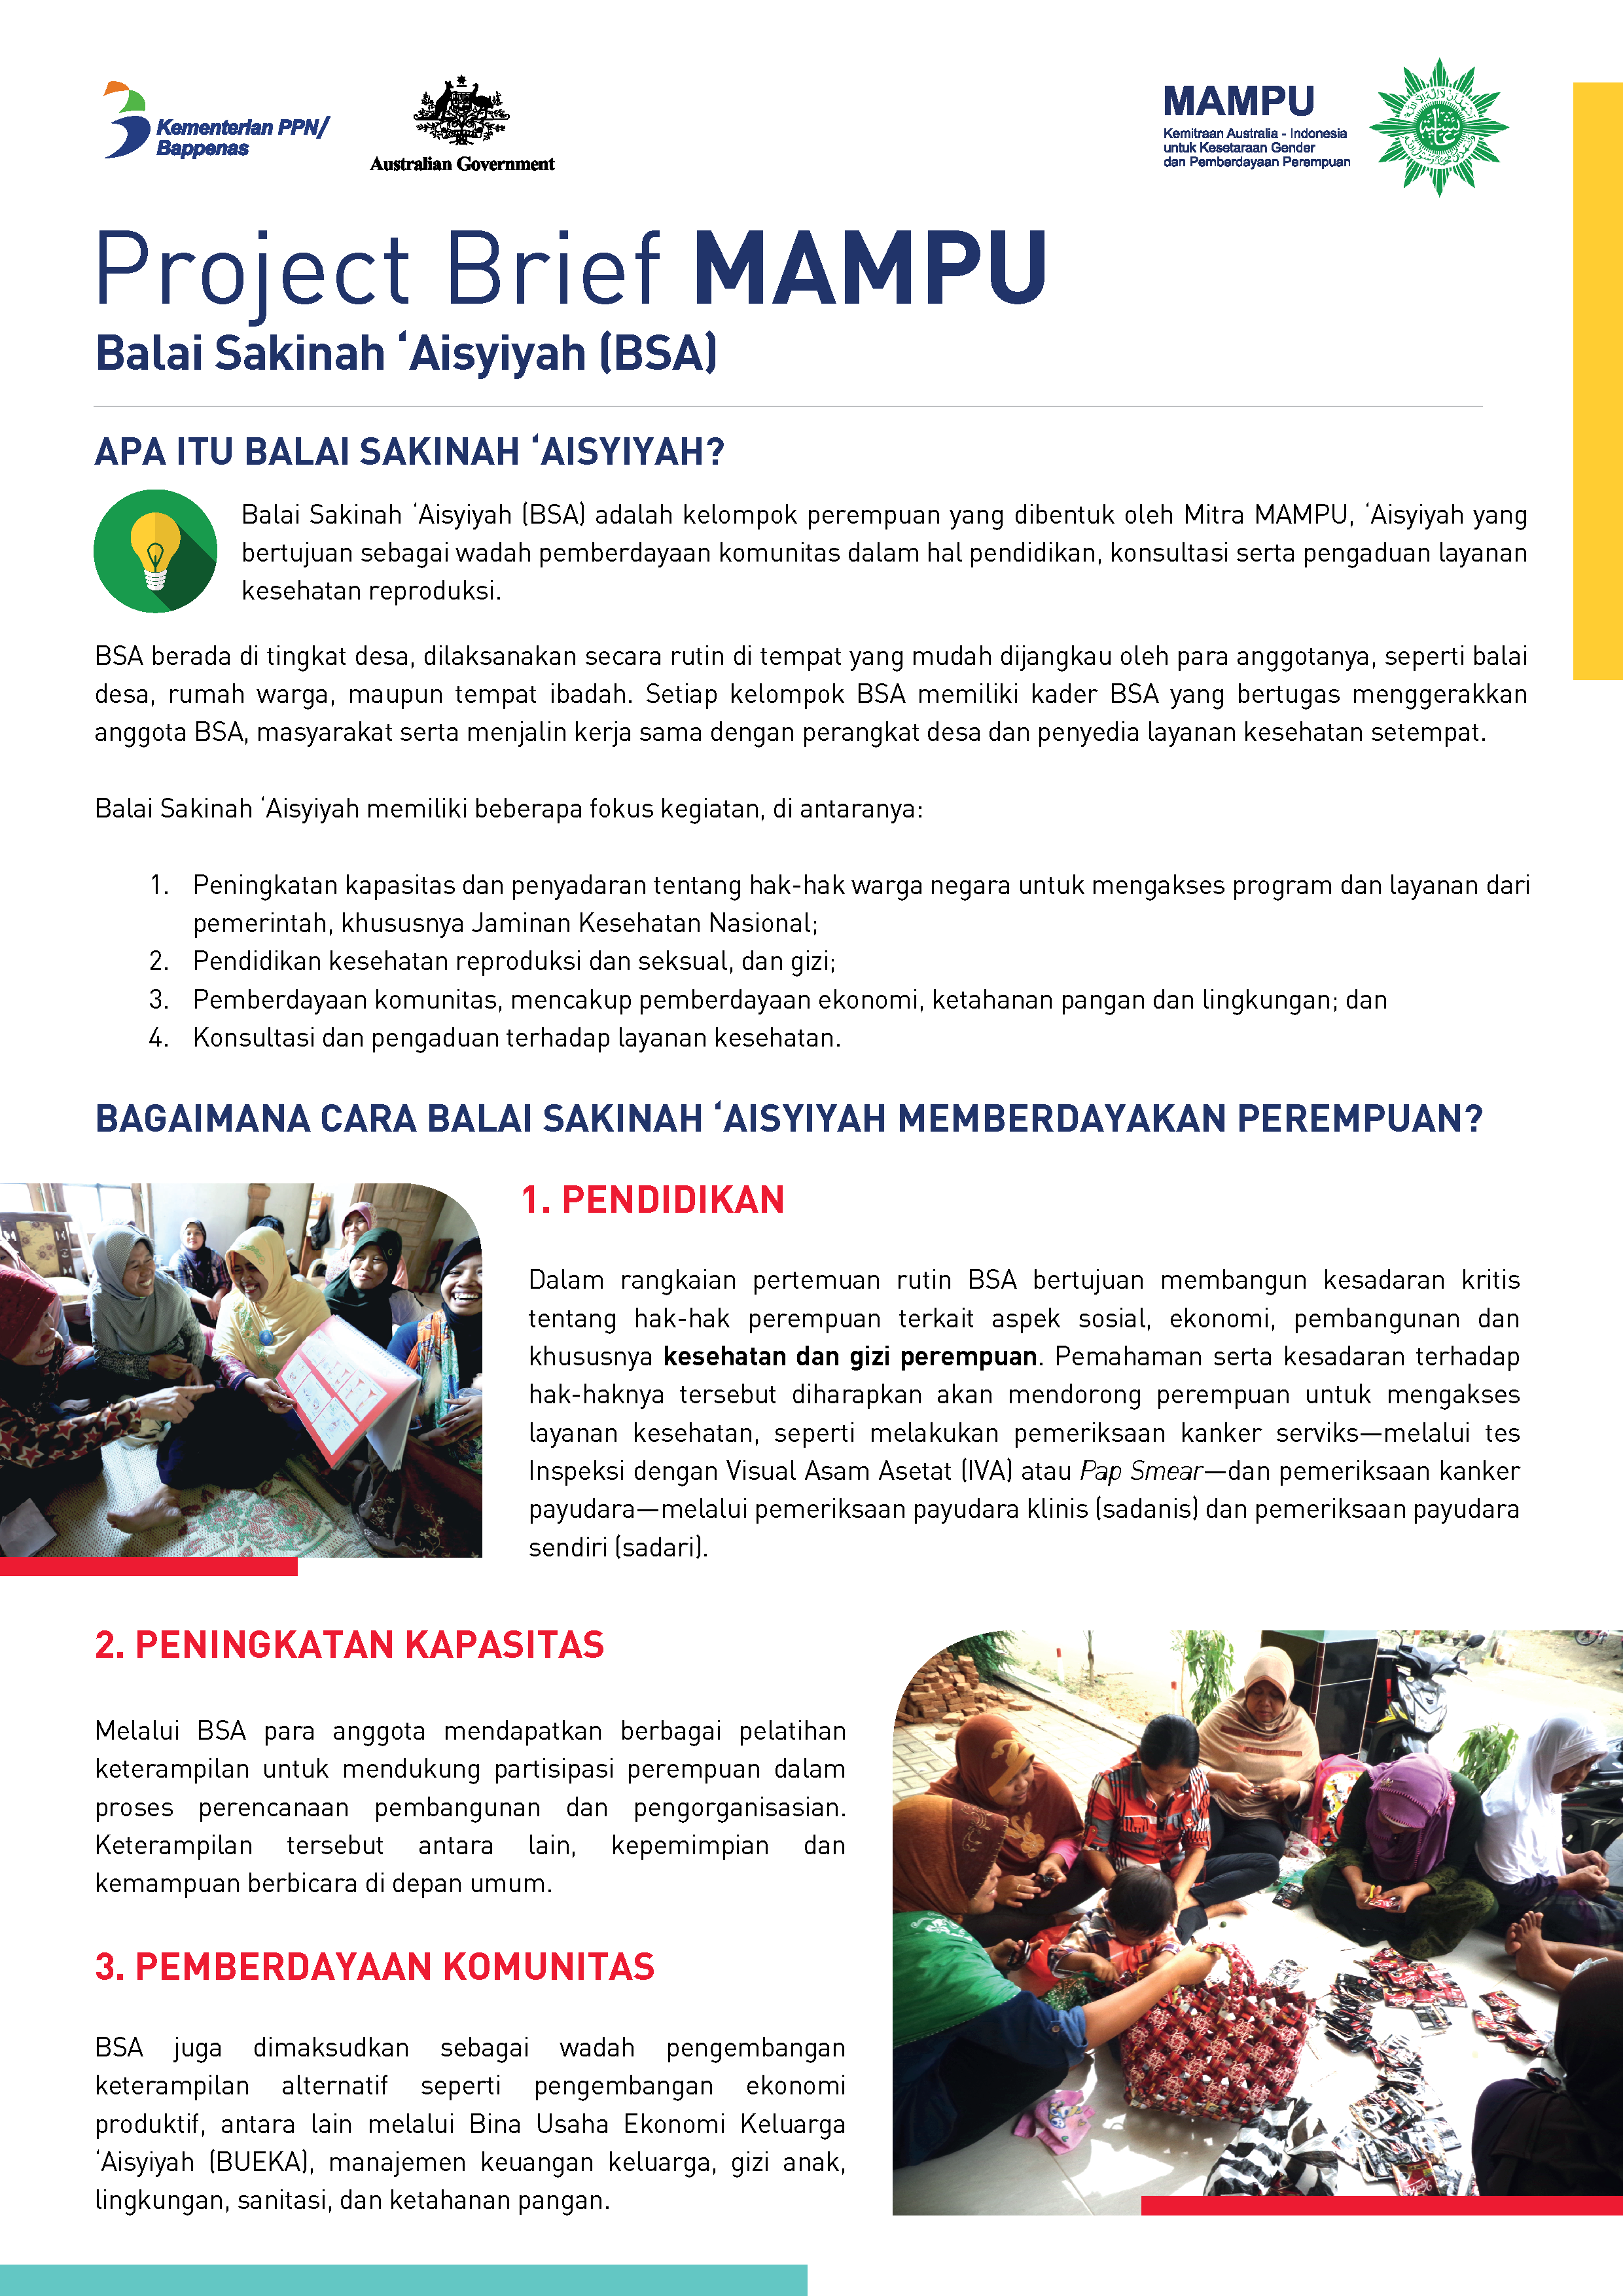 Project Brief: Balai Sakinah ‘Aisyiyah